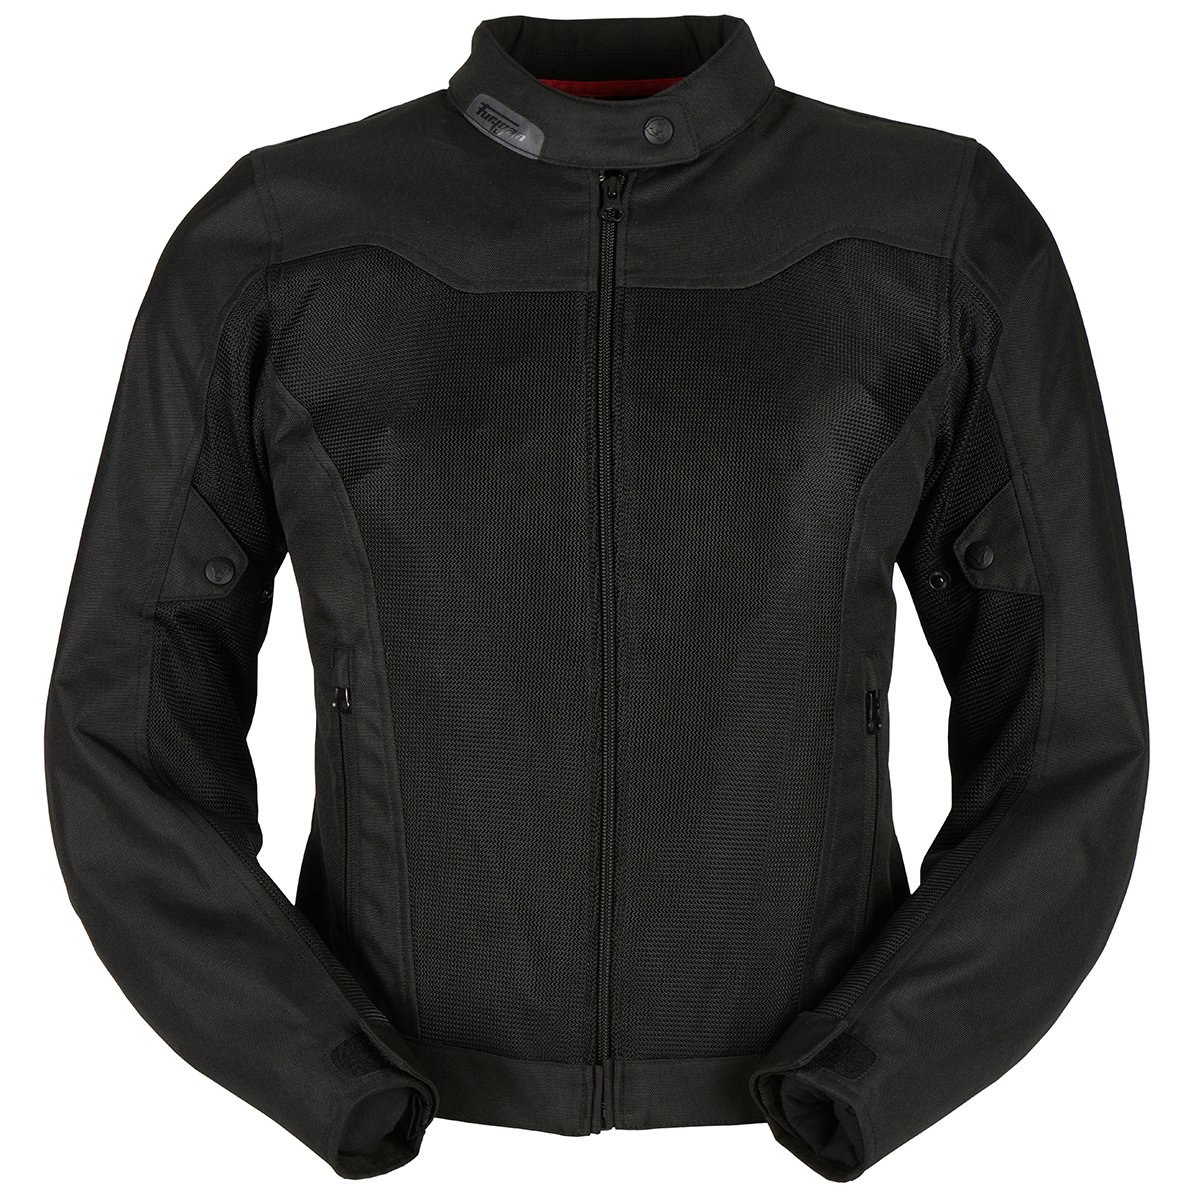 Image of Furygan Mistral Evo 3 Jacket Lady Black Size L EN